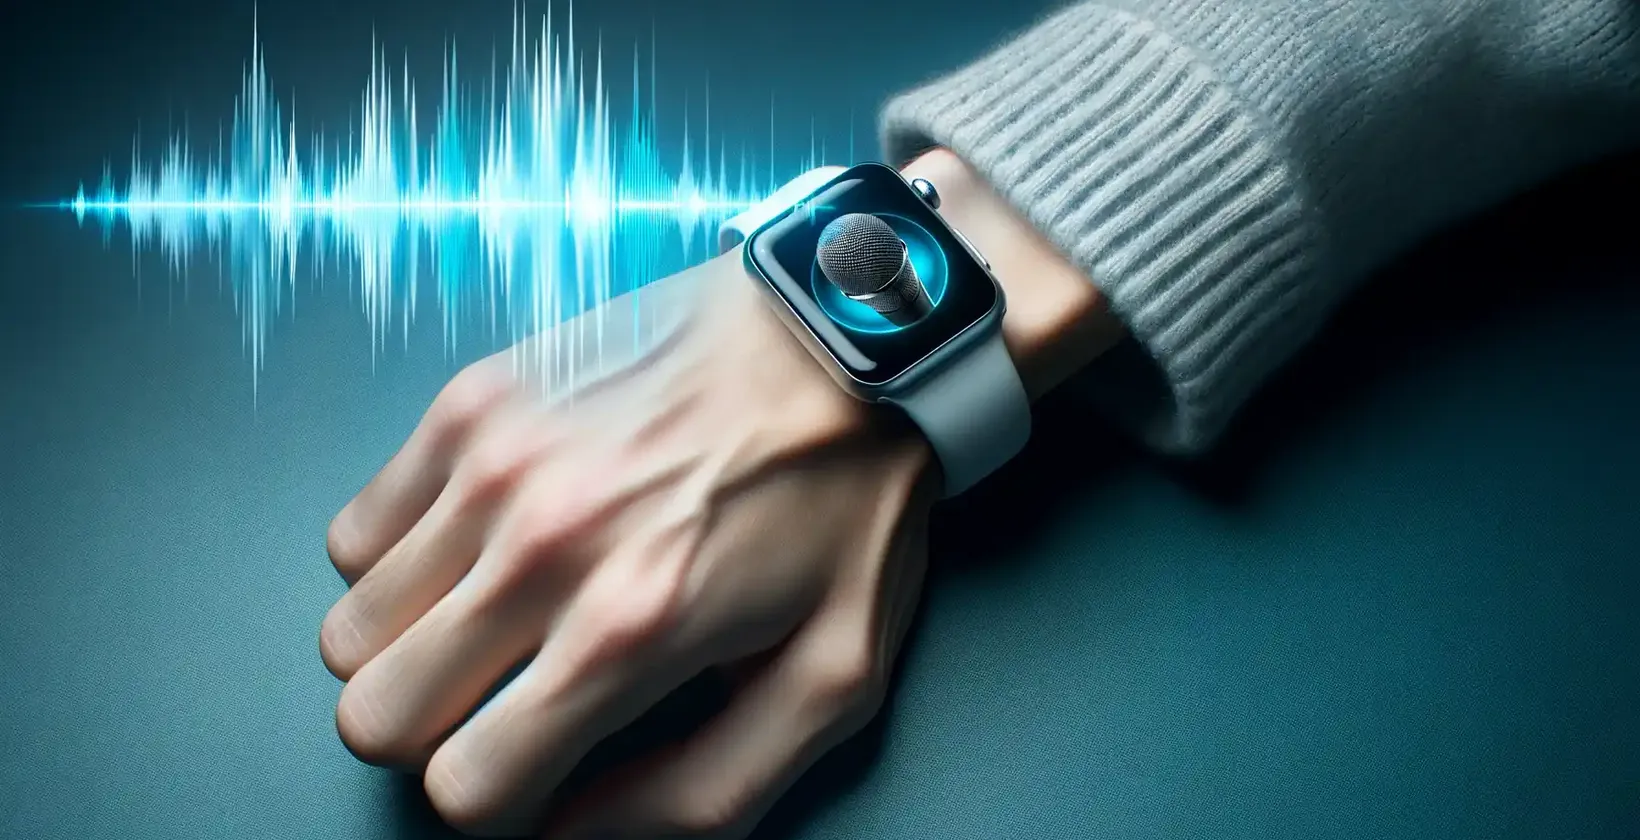 Bližnji pogled na zapestje osebe, ki nosi Apple Watch, na katerem je prikazana ikona mikrofona, ki označuje način narekovanja